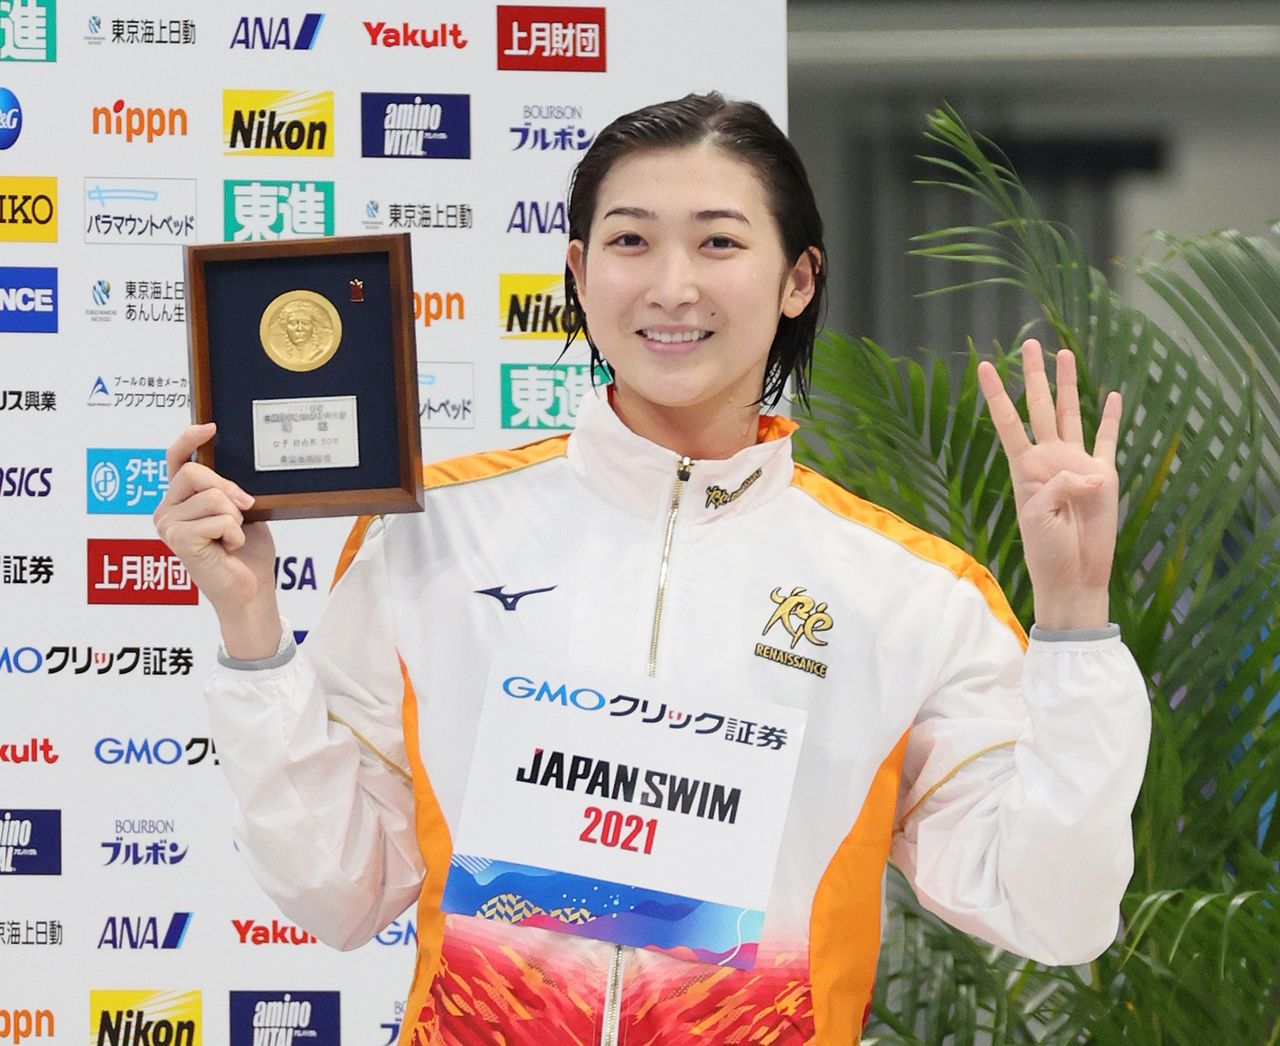 Икээ победила в 50-метровке вольным стилем и завоевала 4 медали на Национальном чемпионате. 10.04.2021 (© Jiji)